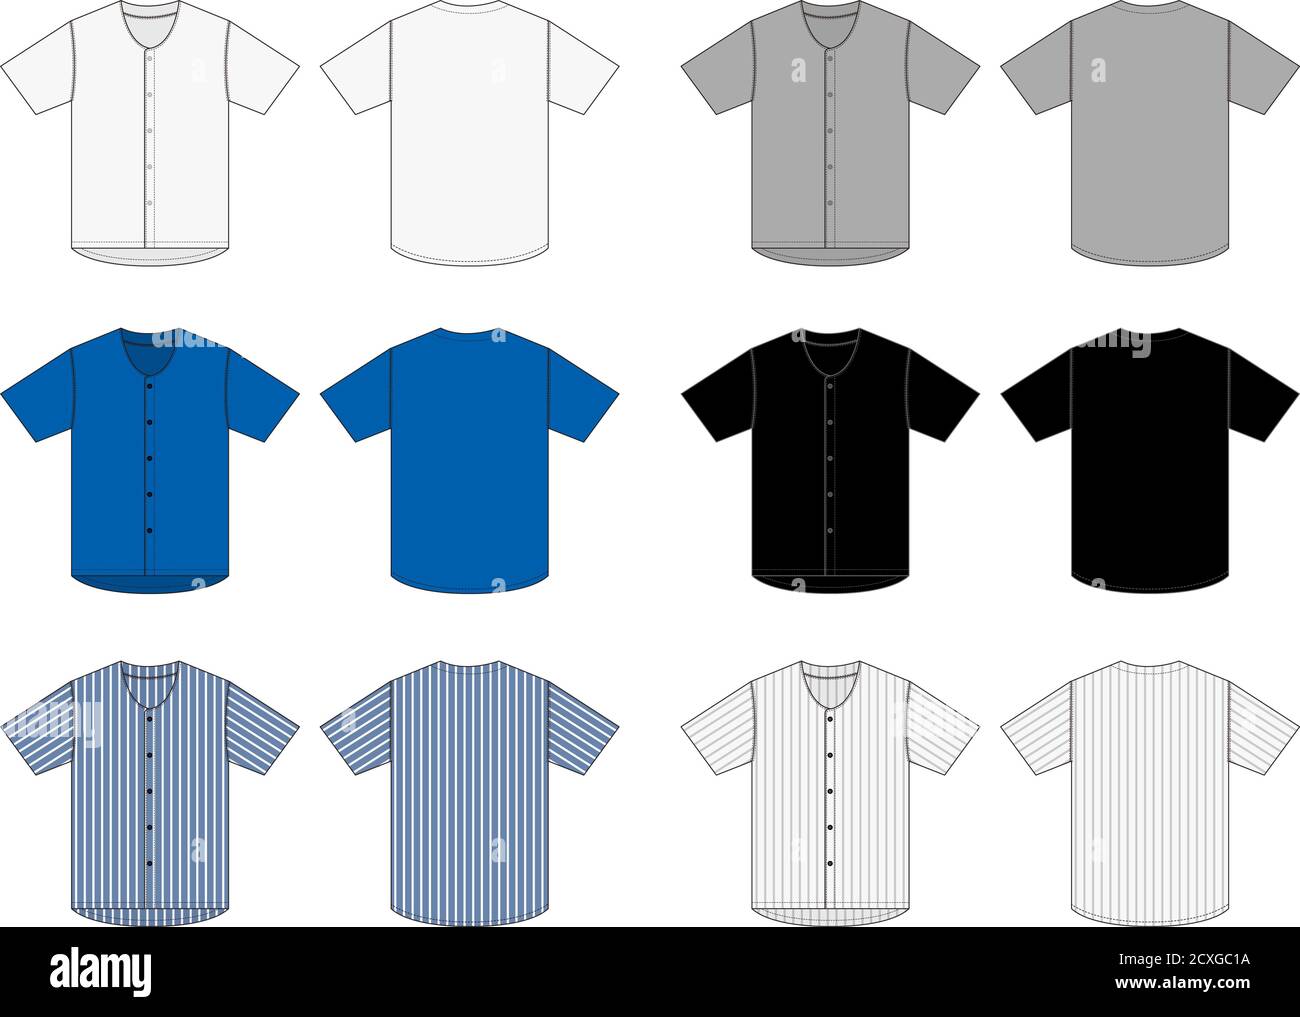 Jersey shortsleeve shirt (baseball uniform shirt) template vector